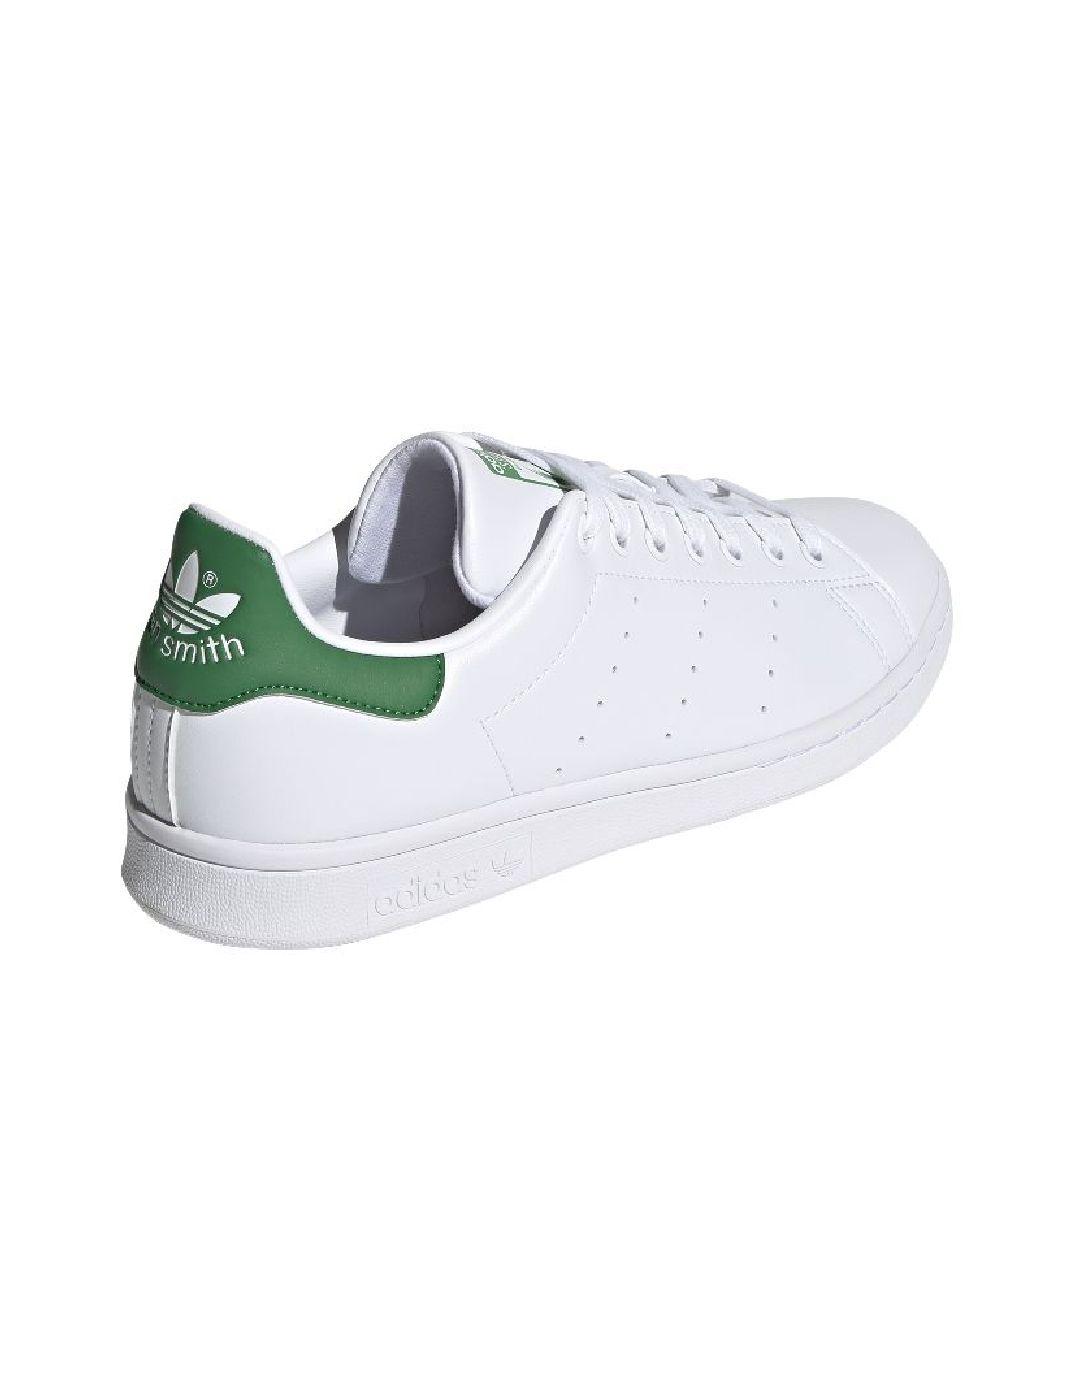 Zapatillas Adidas Stan Blanco/Verde